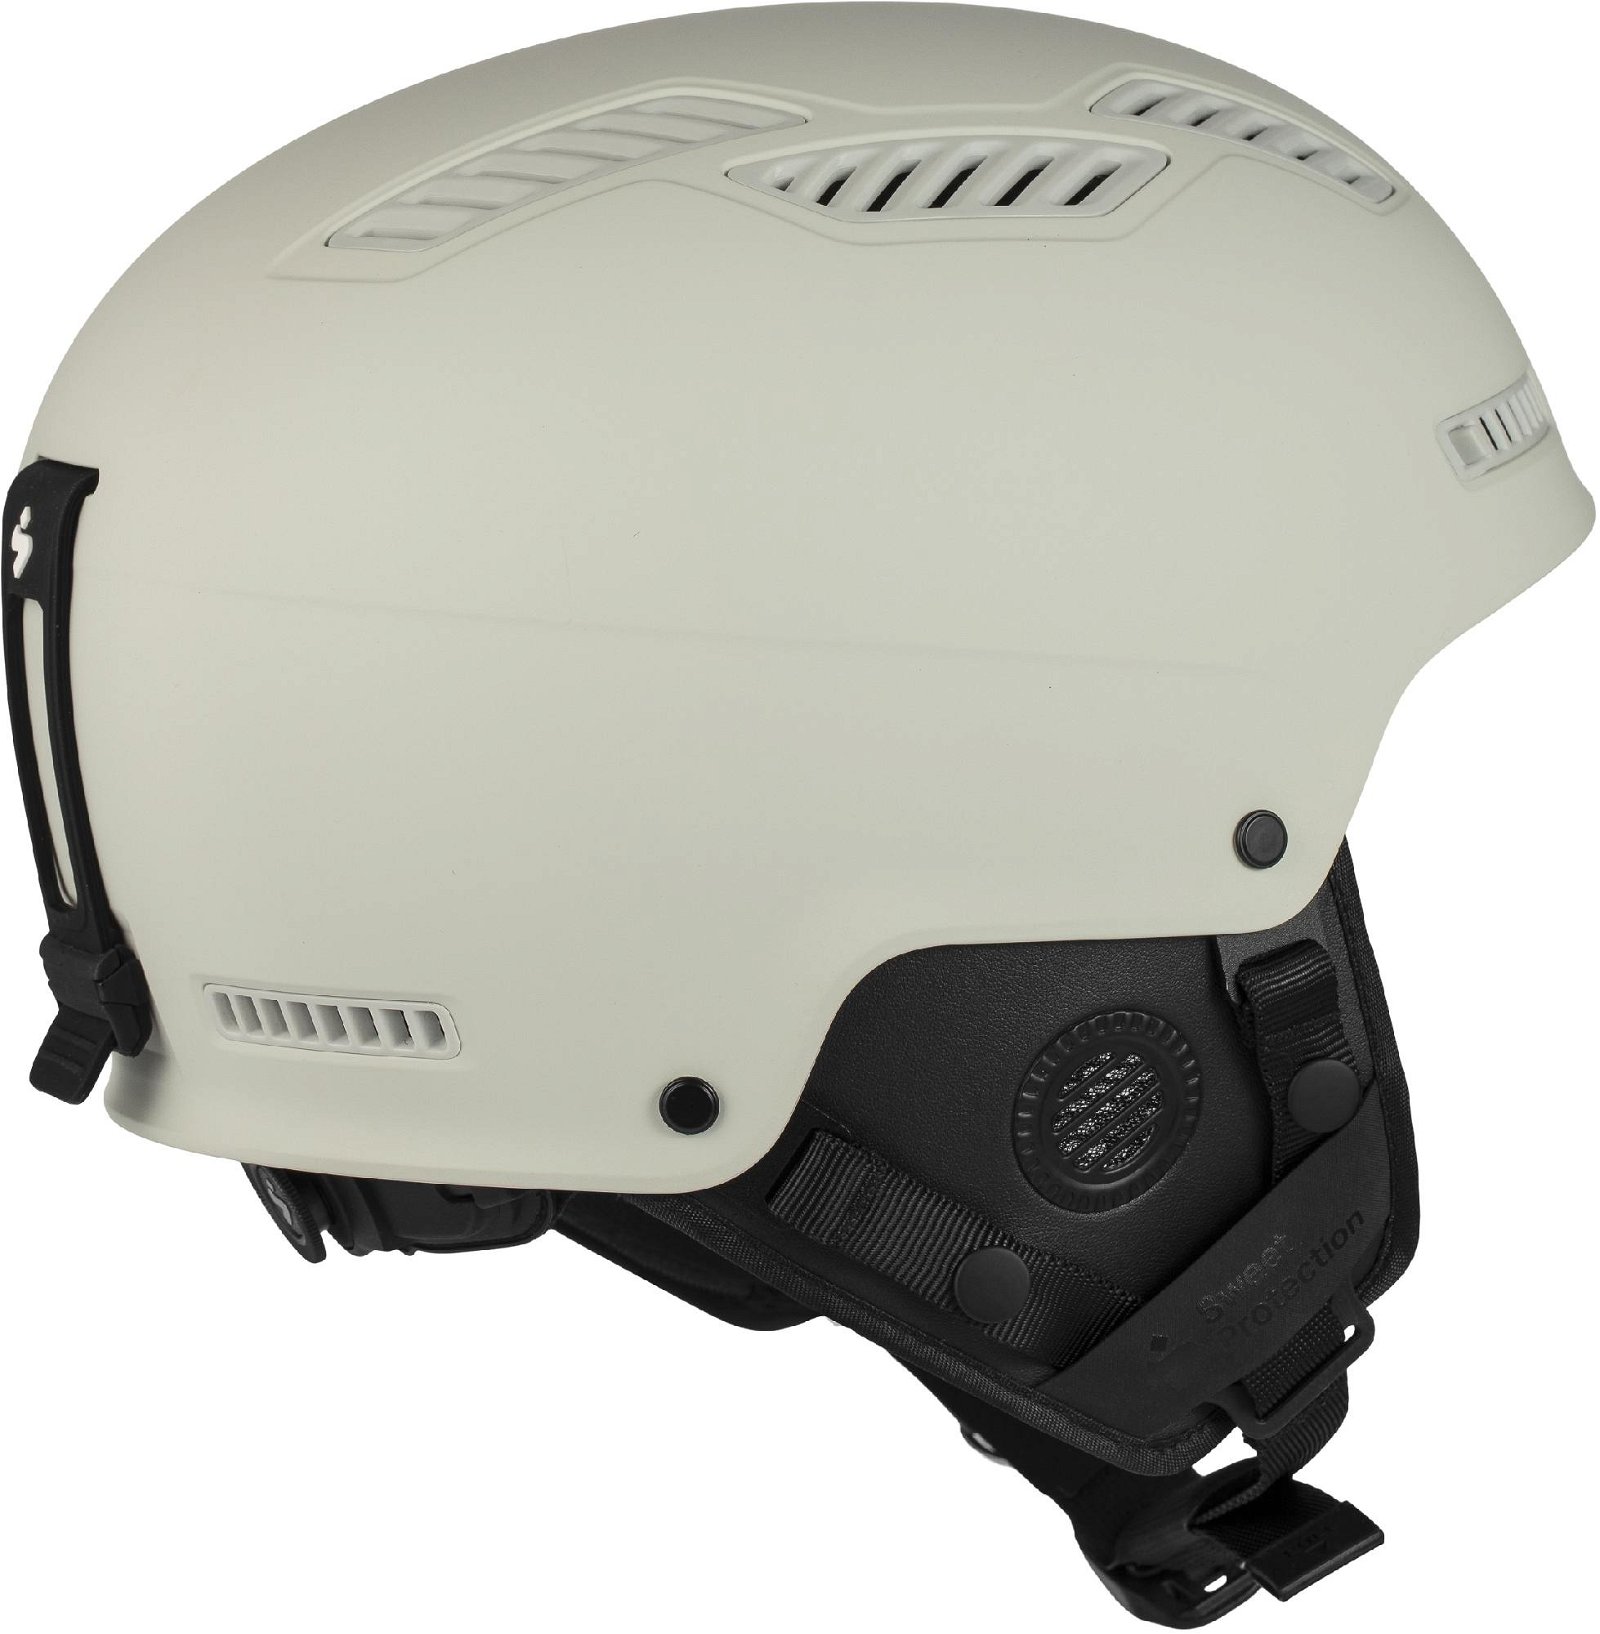 Sweet Igniter 2Vi MIPS Helmet